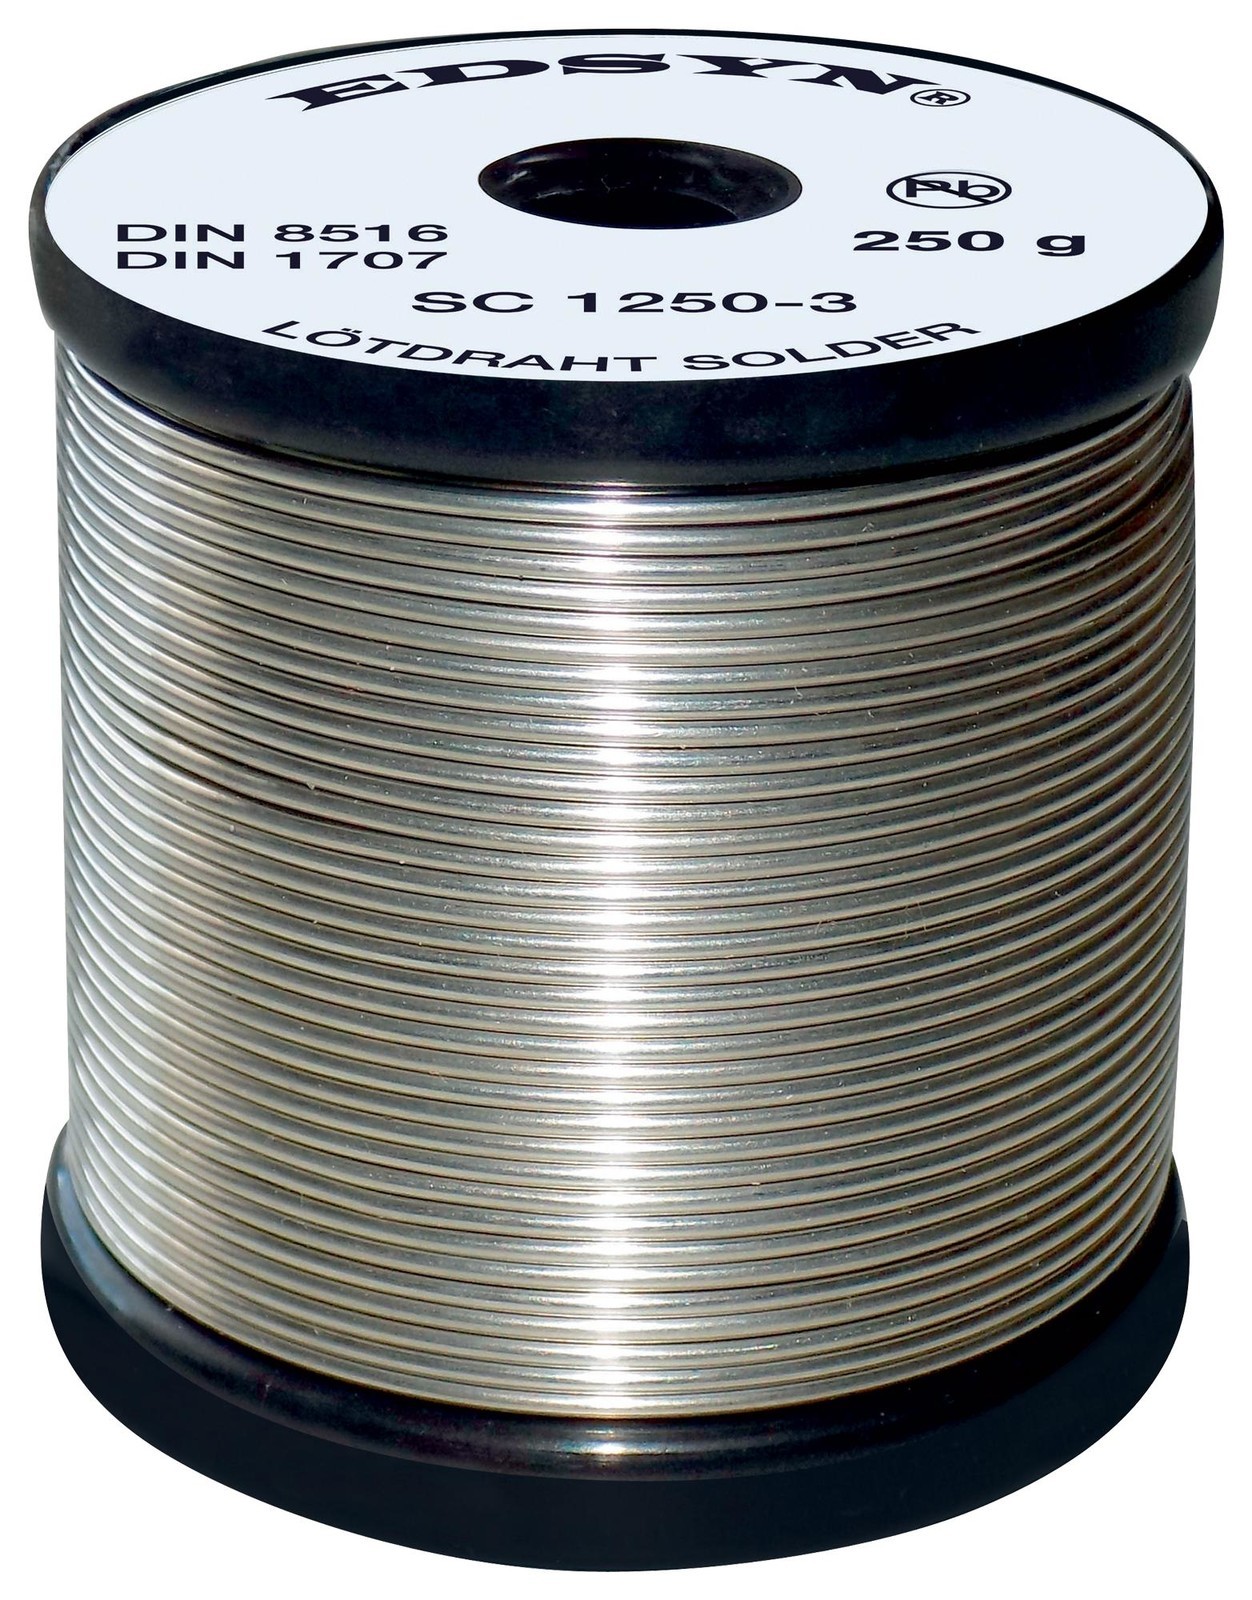 Edsyn Sc 1250-3 Solder Wire, Sn/cu, 1mm, 250G